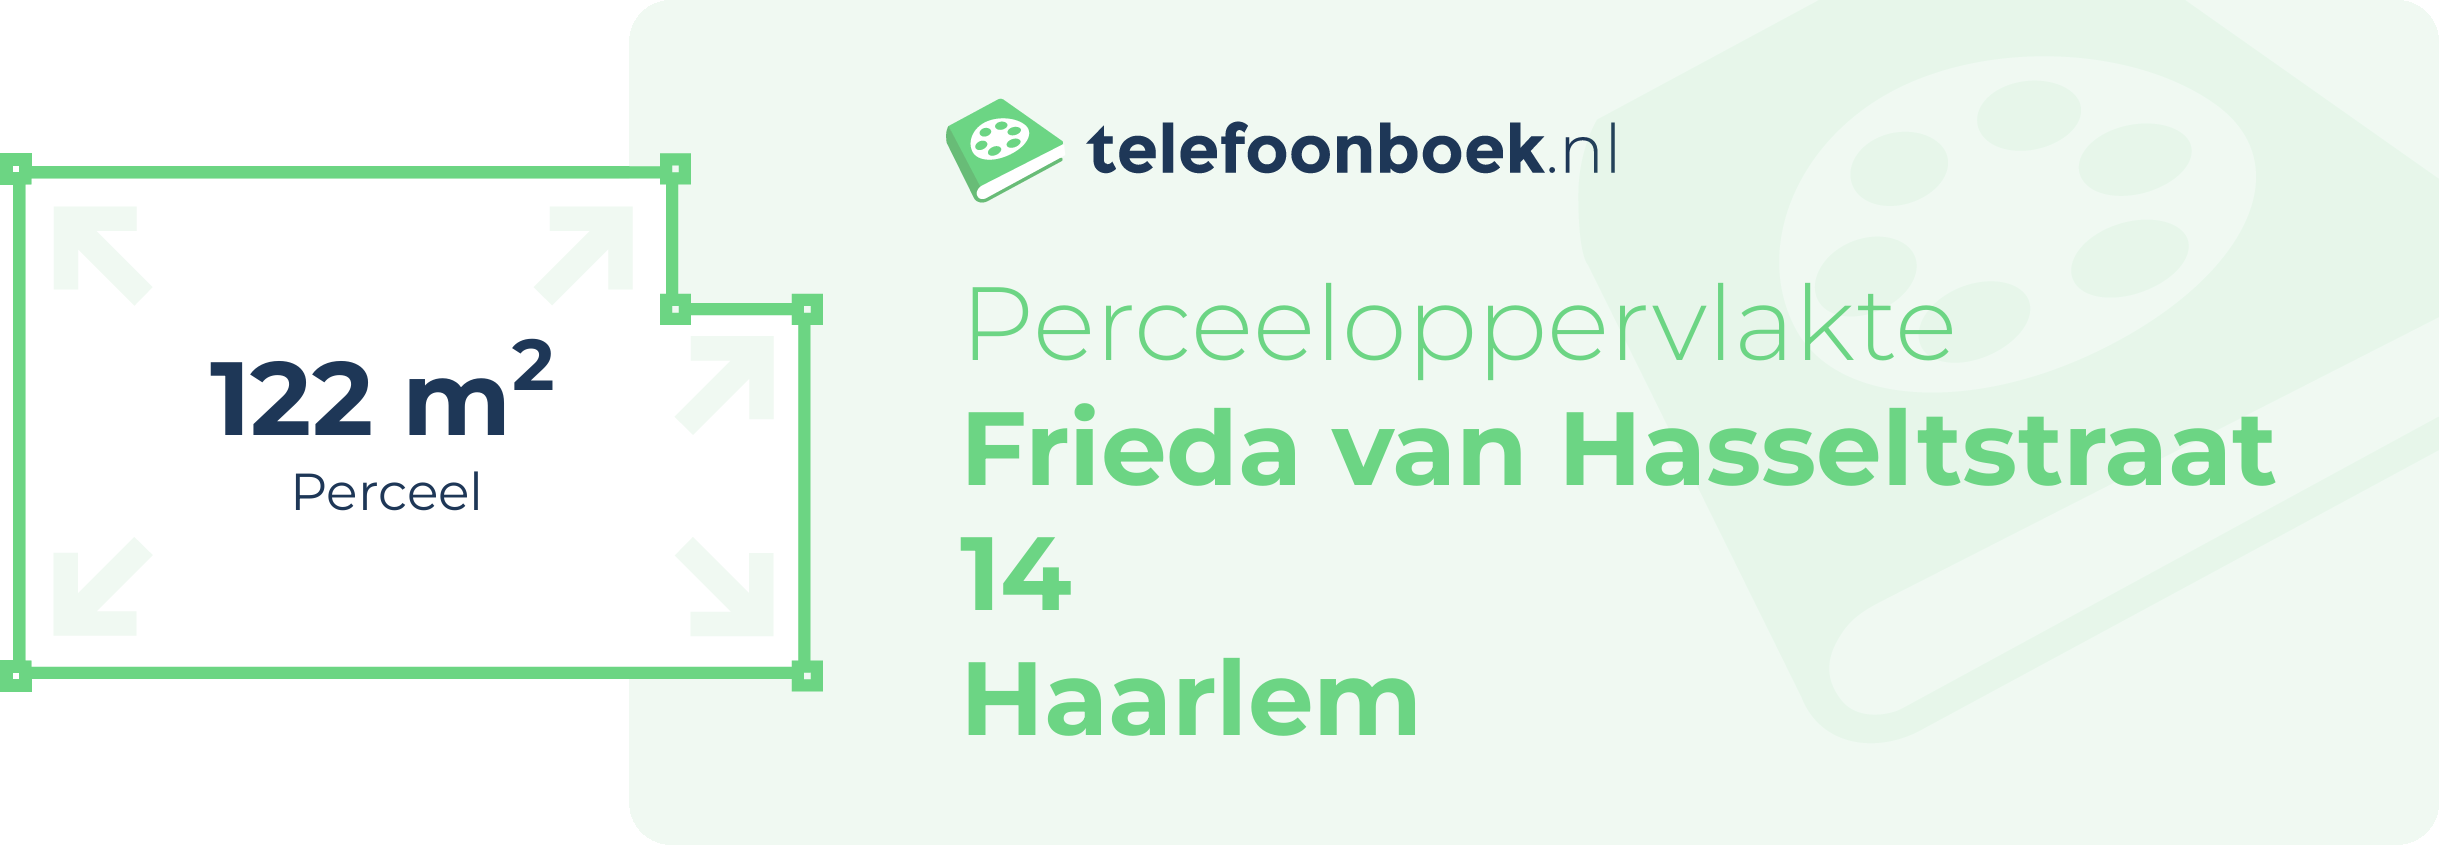 Perceeloppervlakte Frieda Van Hasseltstraat 14 Haarlem